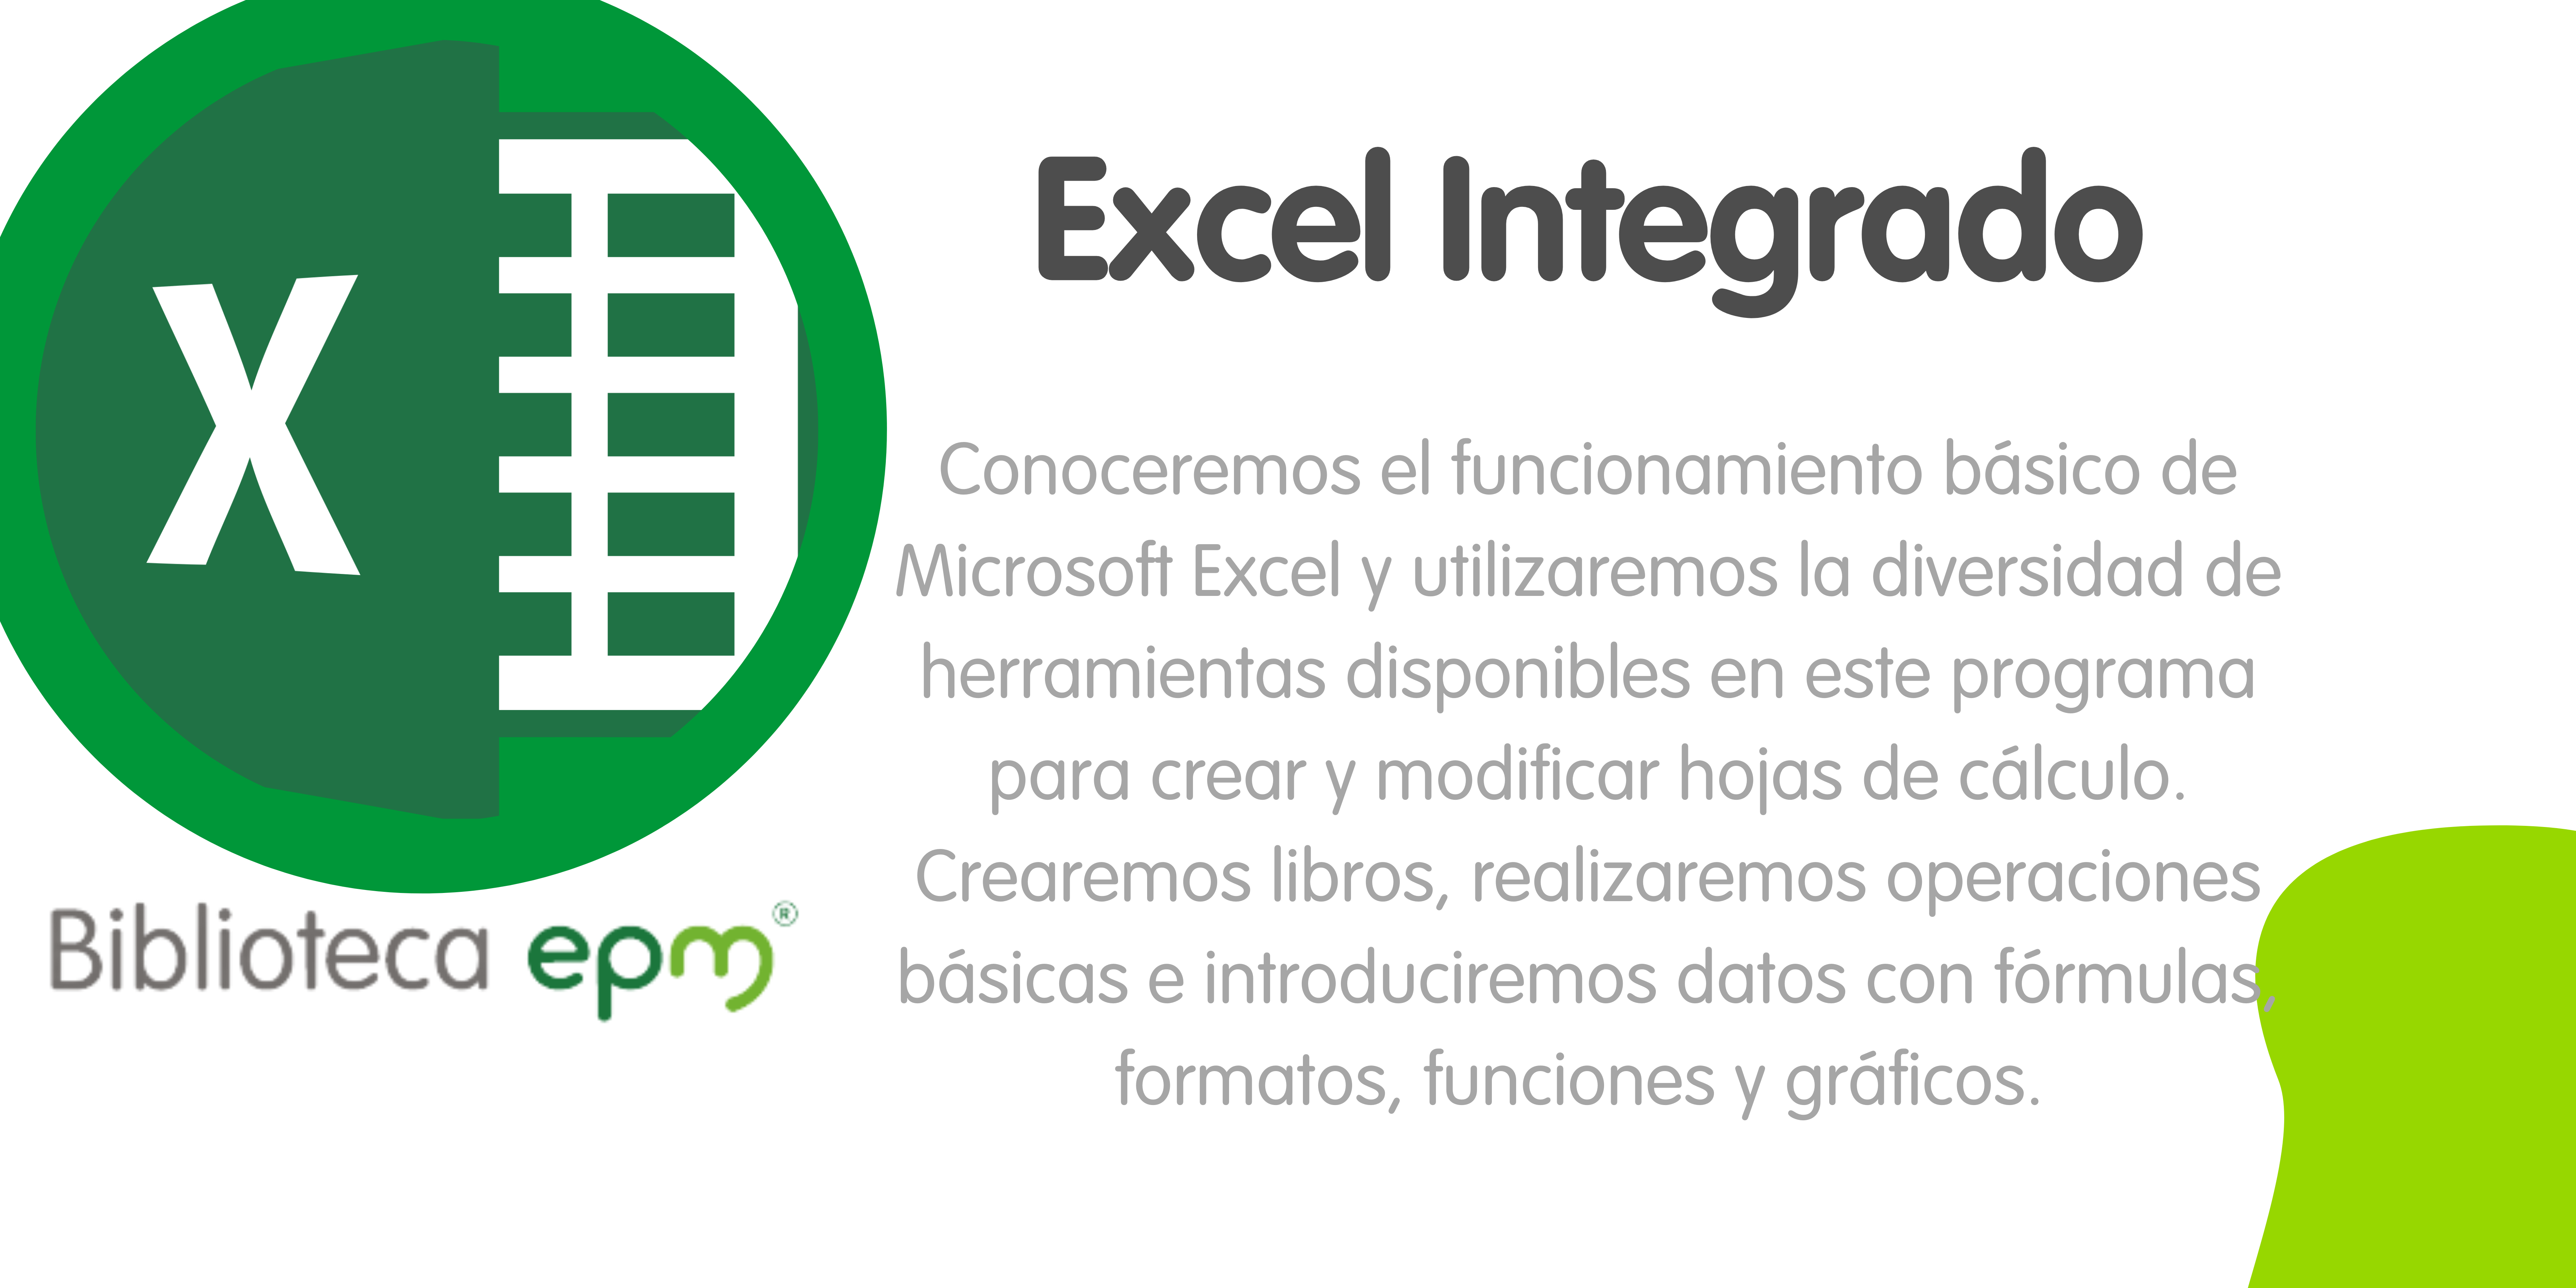 Excel Integrado